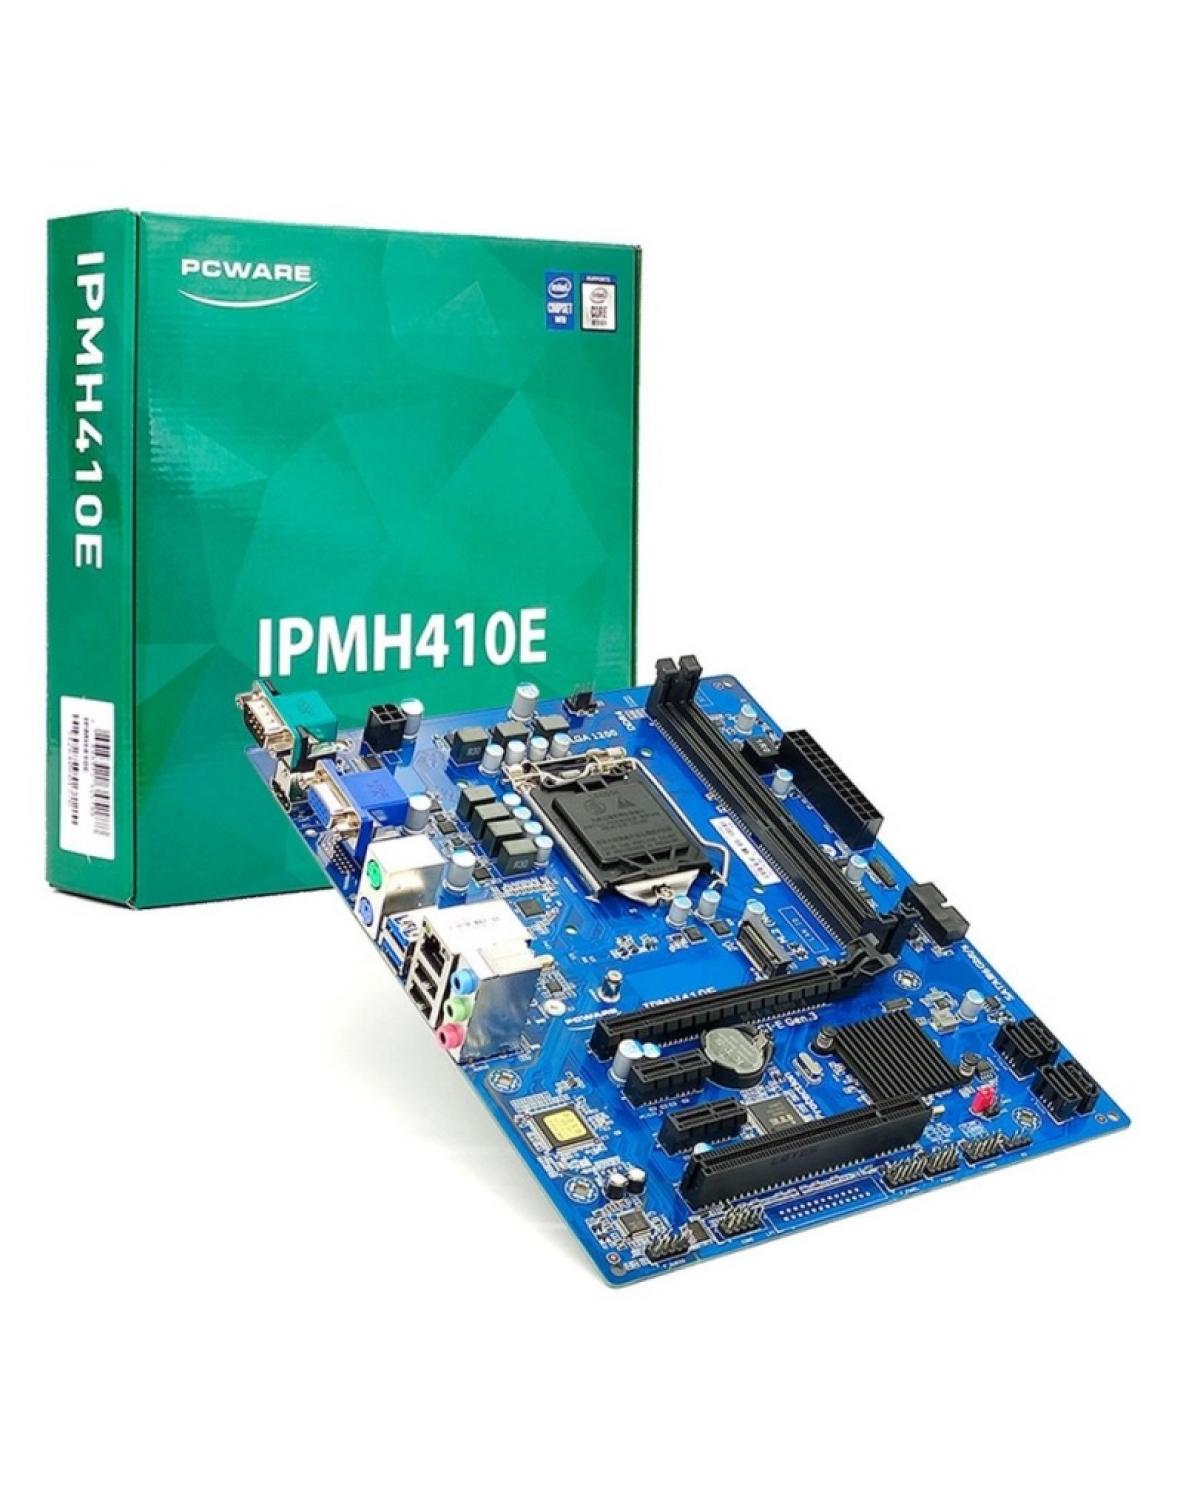 PLACA-MÃE MICRO ATX PCWARE INTEL IPMH410E - LGA 1200 - 10ª GERAÇÃO VGA/HDMI/USB 3.0